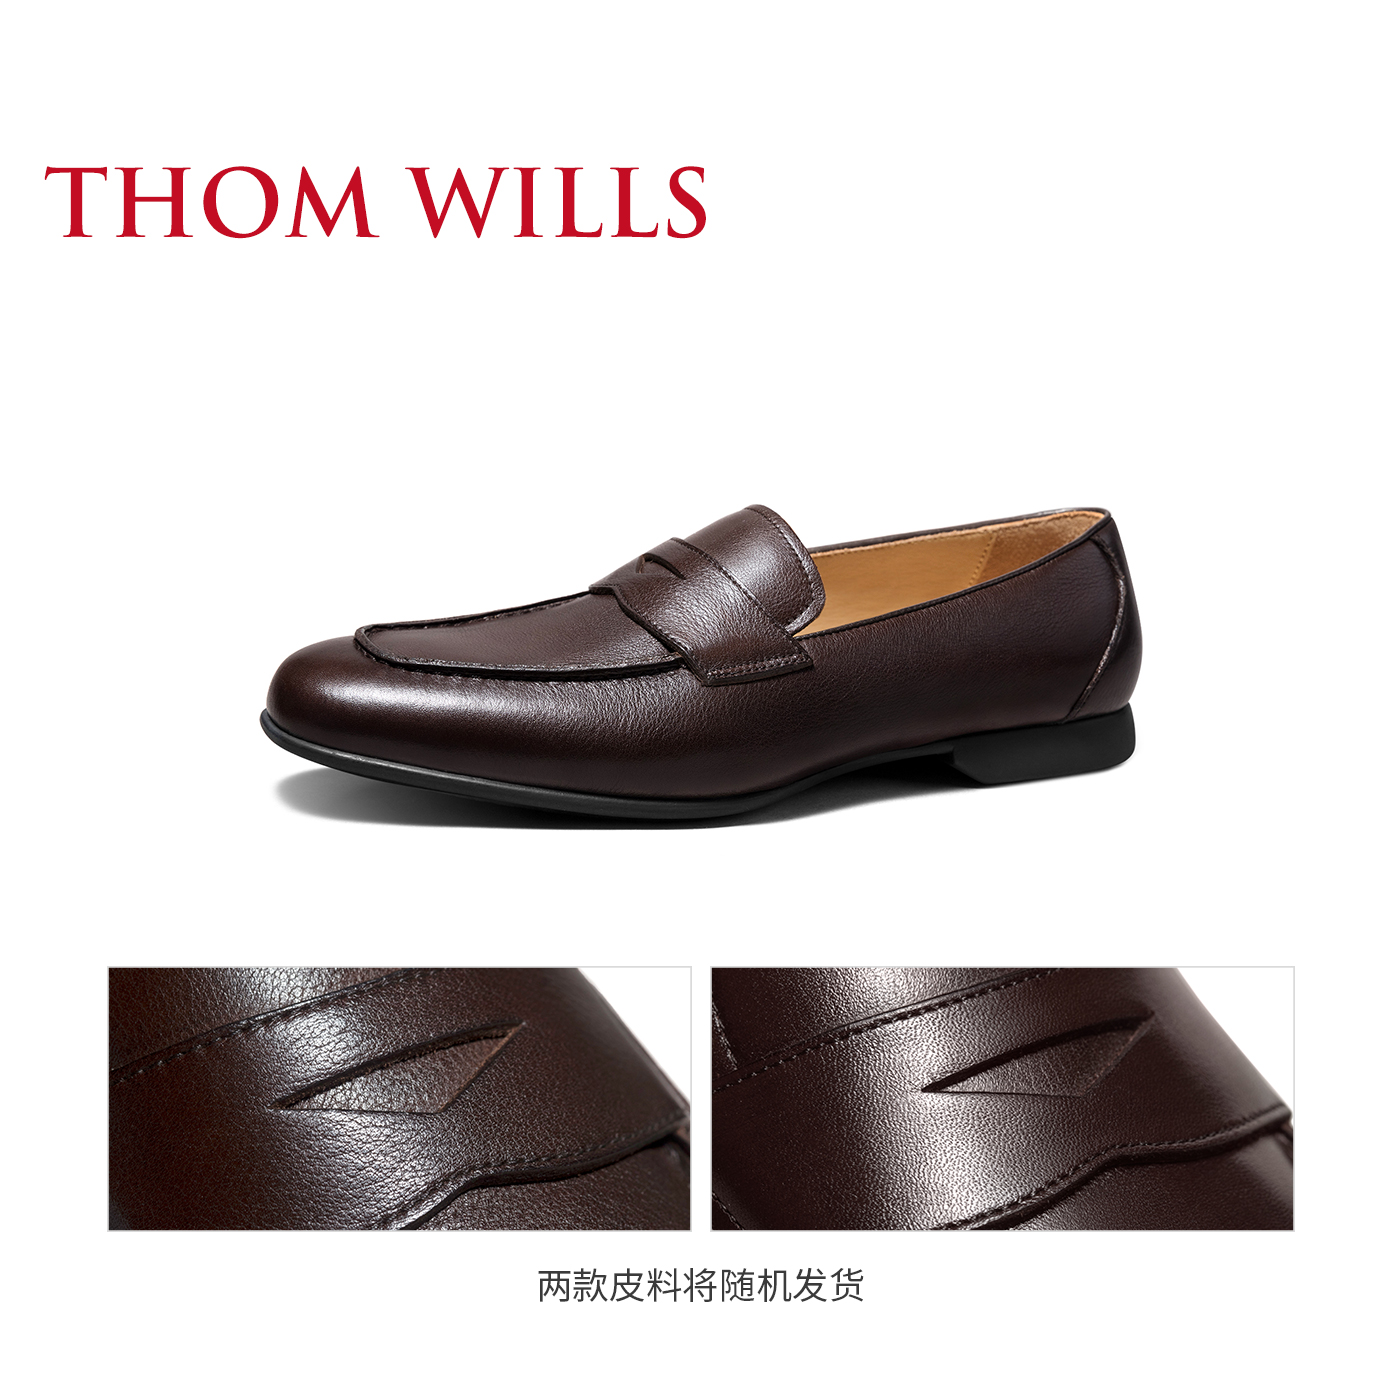 新款ThomWills男鞋乐福鞋便士一脚蹬软皮商务休闲皮鞋男豆豆鞋夏